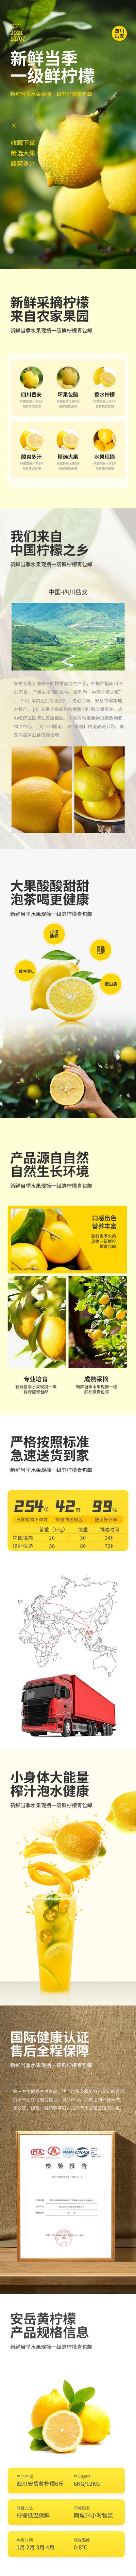 南门网 广告 海报 电商 柠檬 详情页